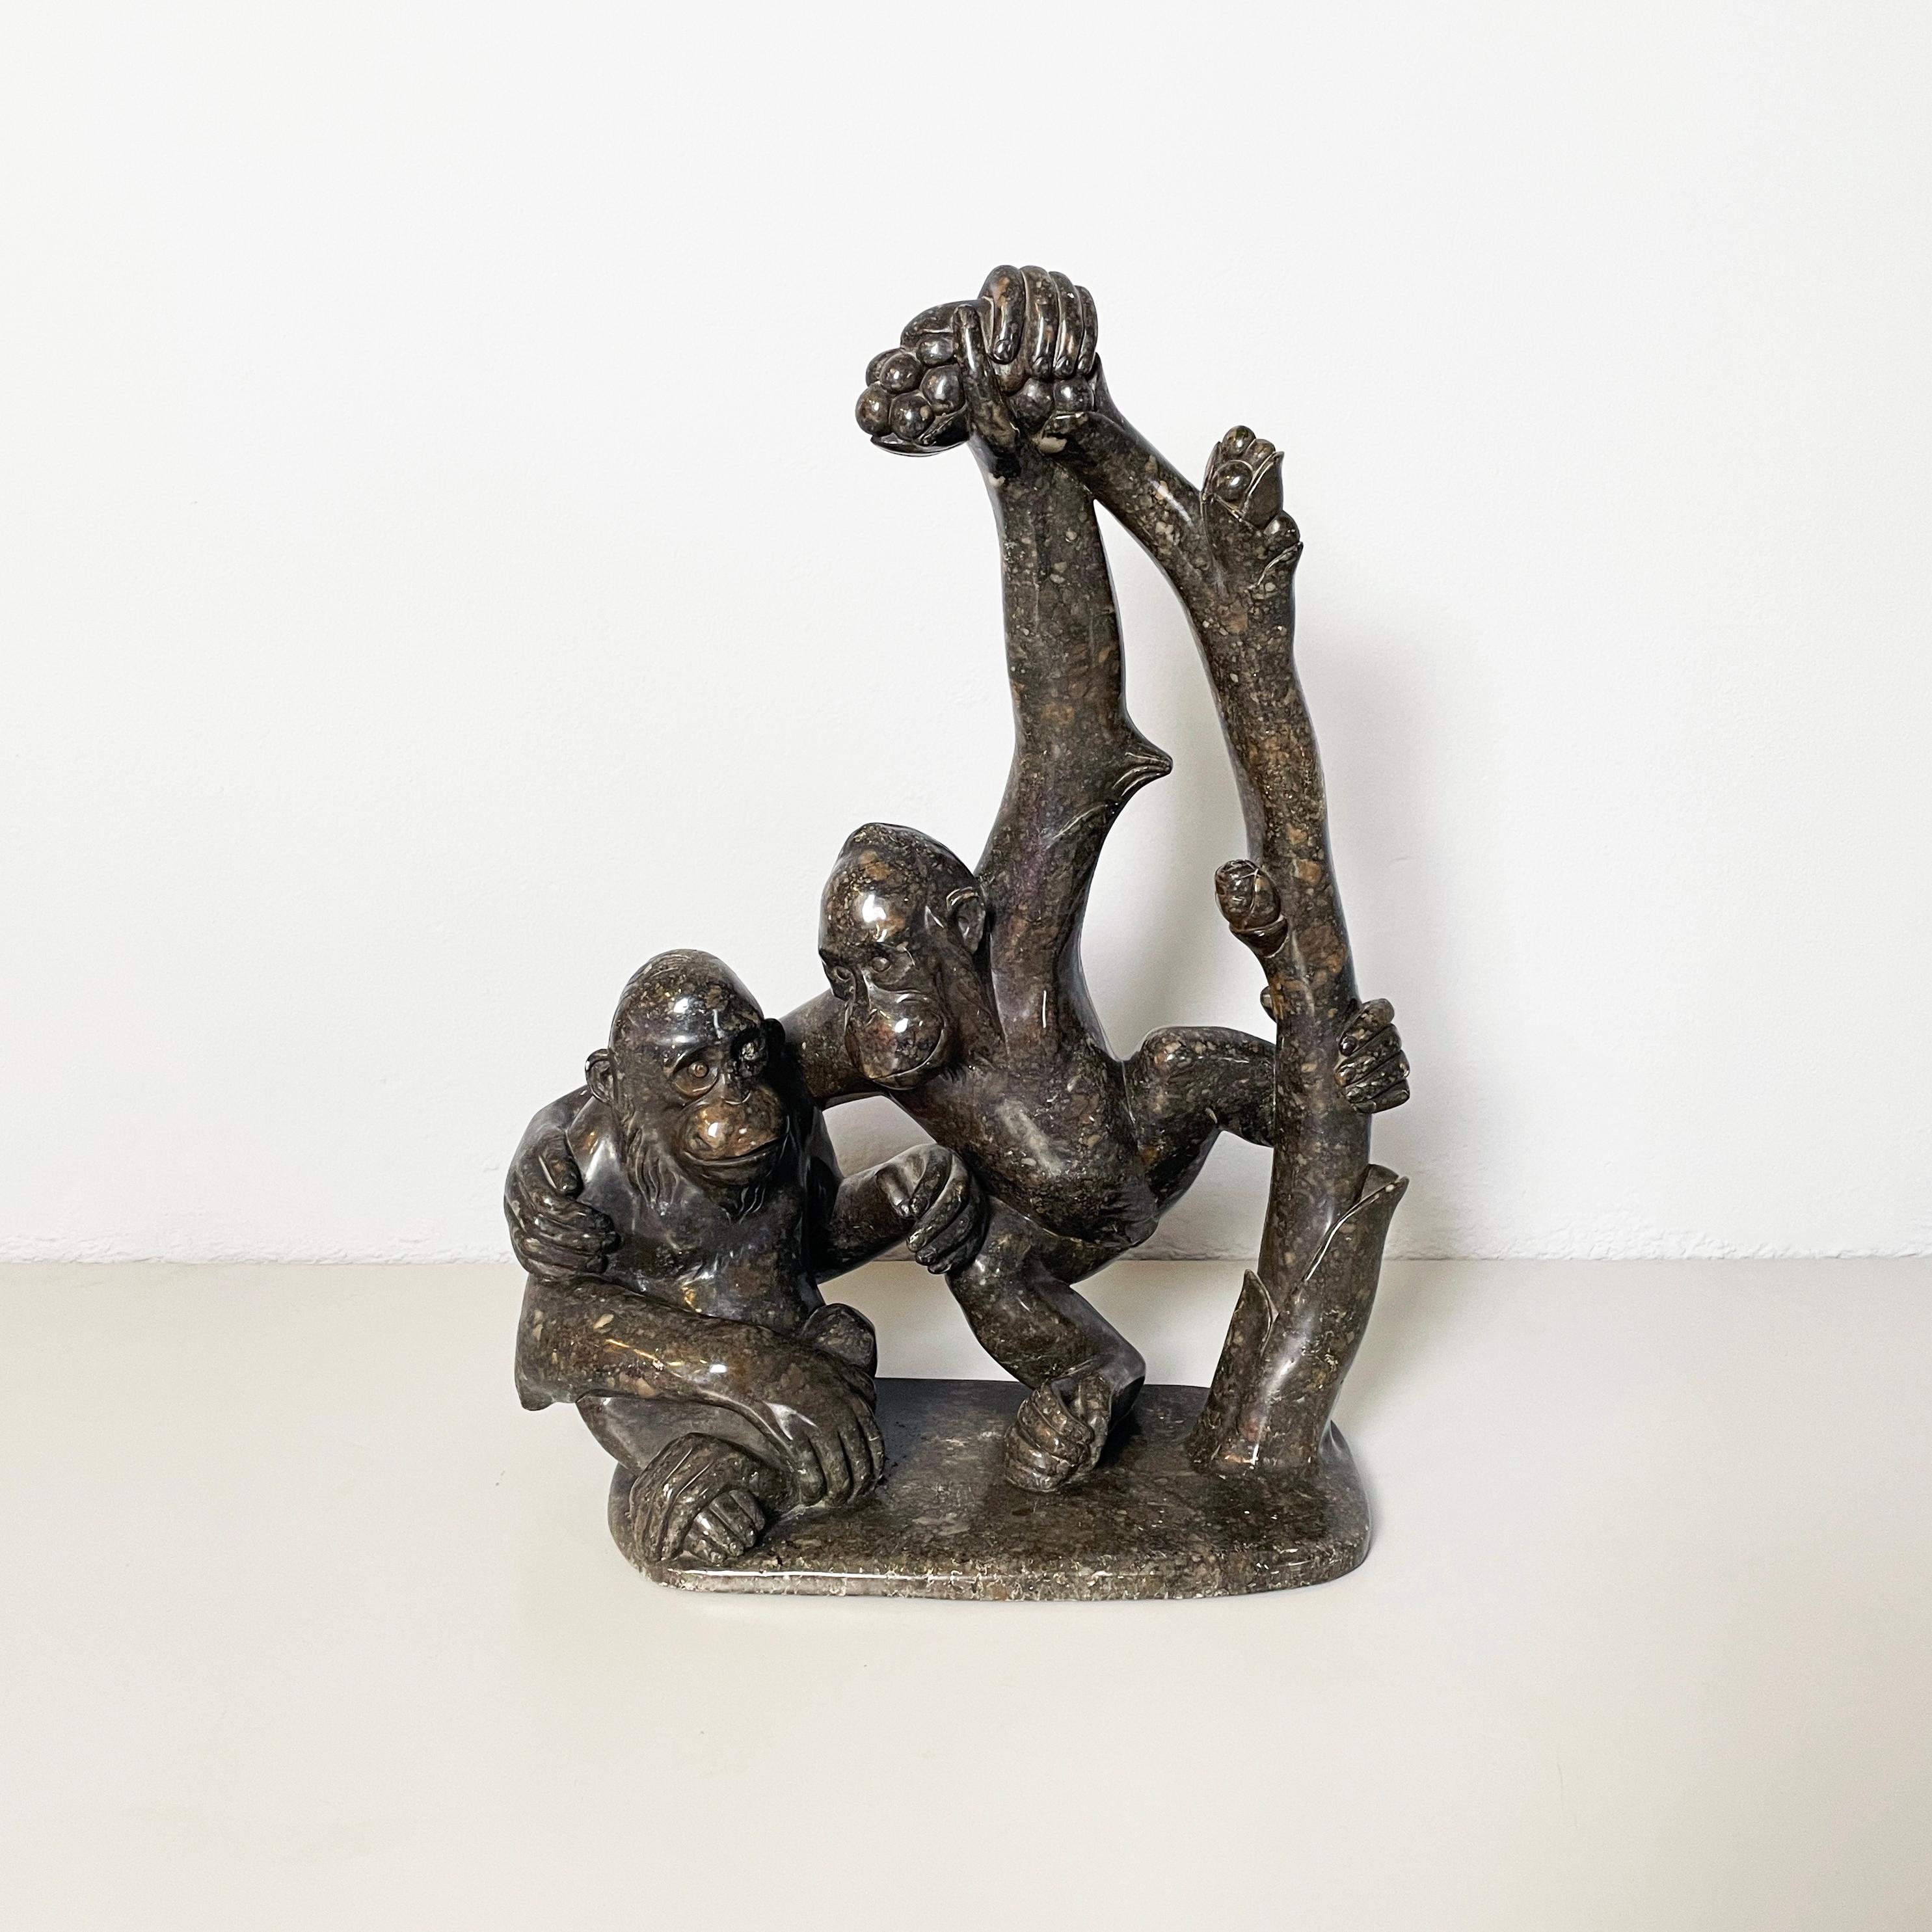 Italienische Mid-Century-Modern-Skulptur von Affen aus Marmor, 20. Jahrhundert
Skulptur, die zwei Affen darstellt, ganz aus fein bearbeitetem dunklem Marmor. Der erste Affe sitzt auf dem Boden, und der zweite wird von einem Ast niedergedrückt,